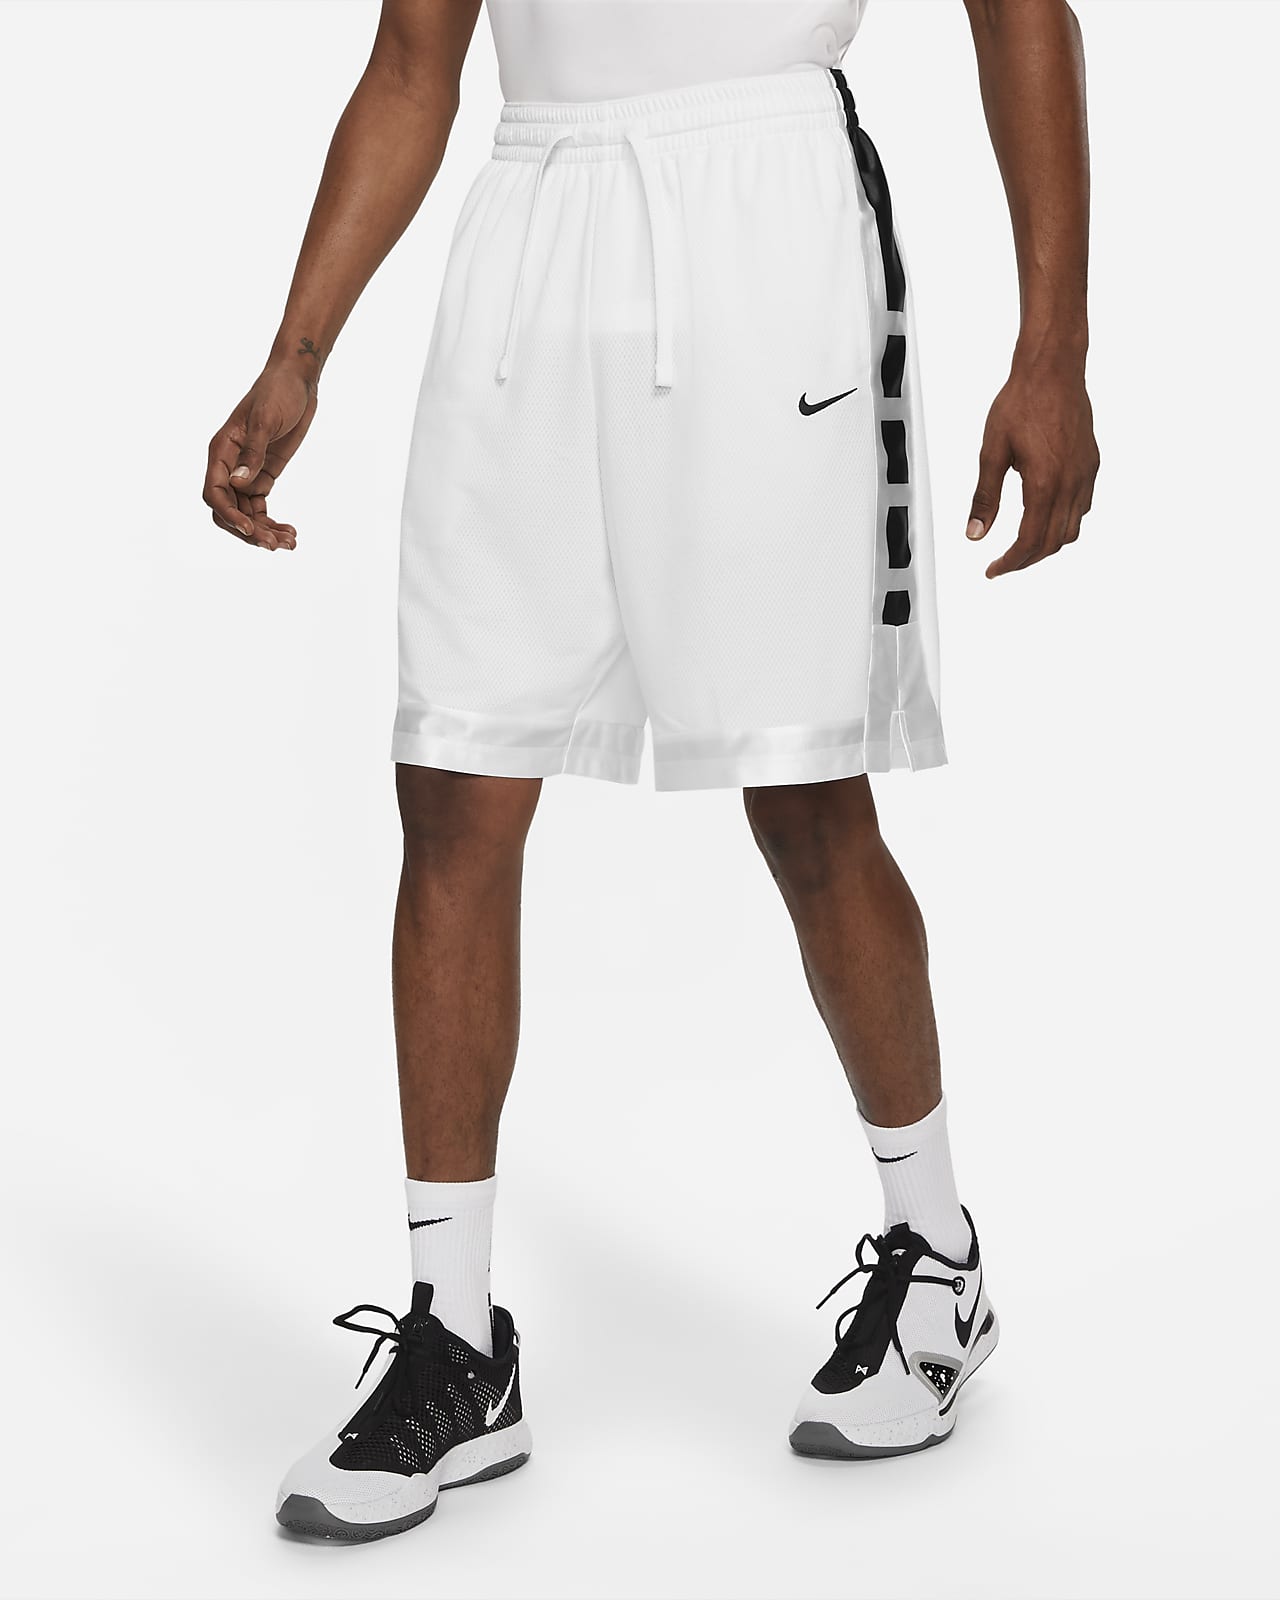 Nike Dri-FIT Elite Stripe Men's Basketball Shorts. Nike.com